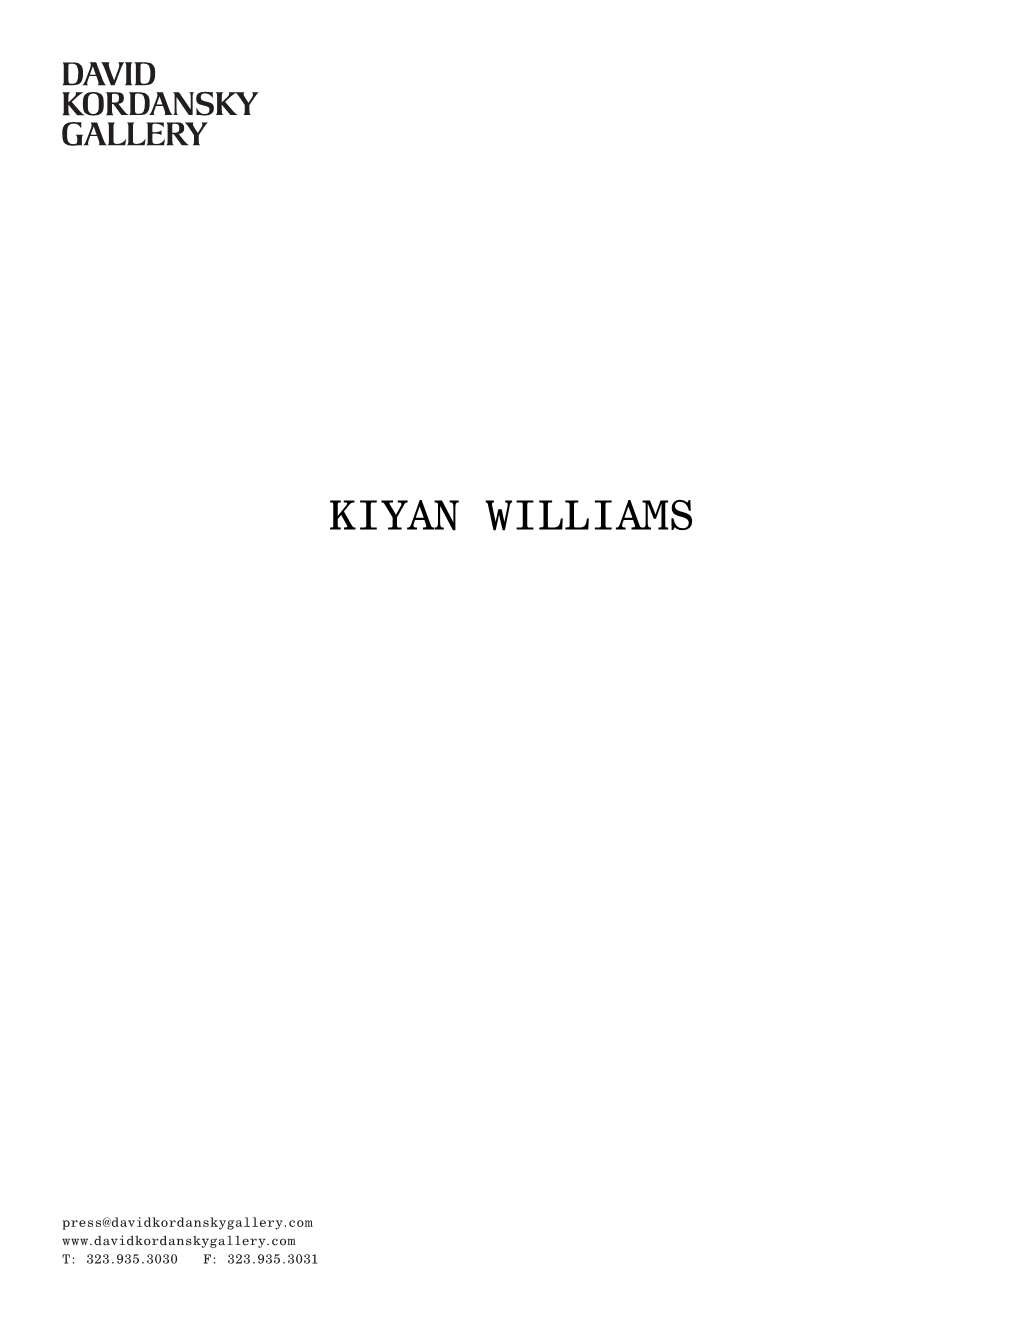 Kiyan Williams